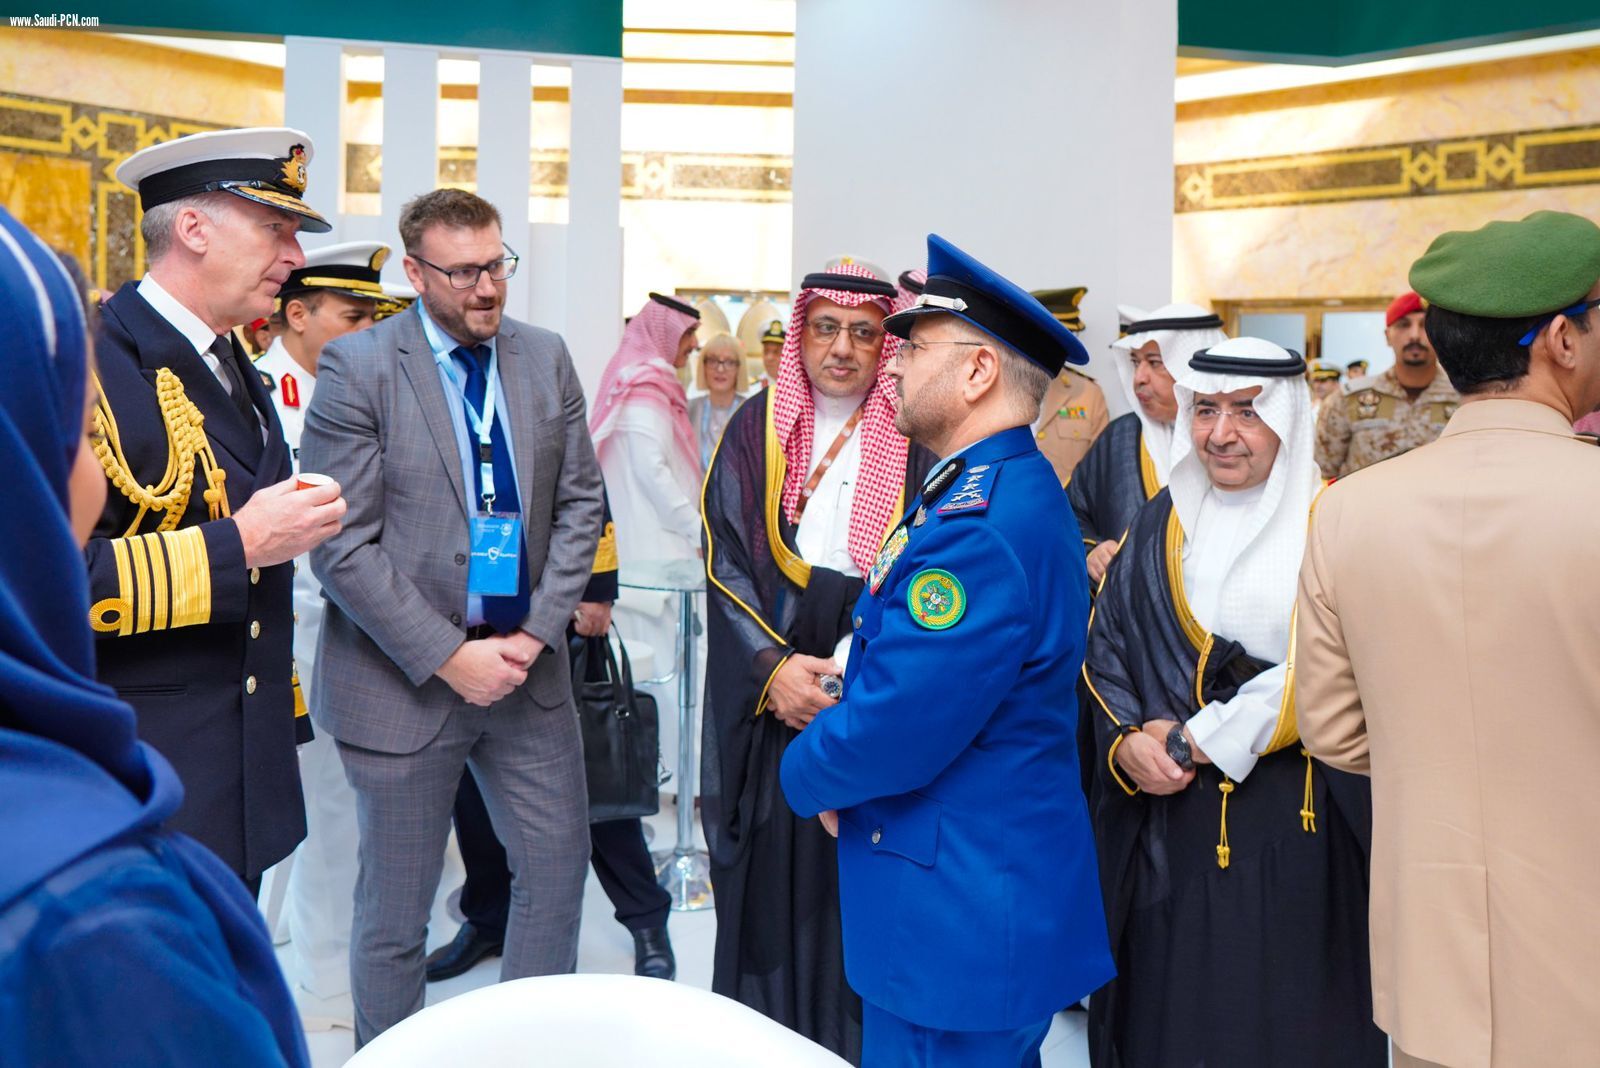 الهيئة العامة للصناعات العسكرية شريك رسمي للملتقى البحري السعودي الدولي